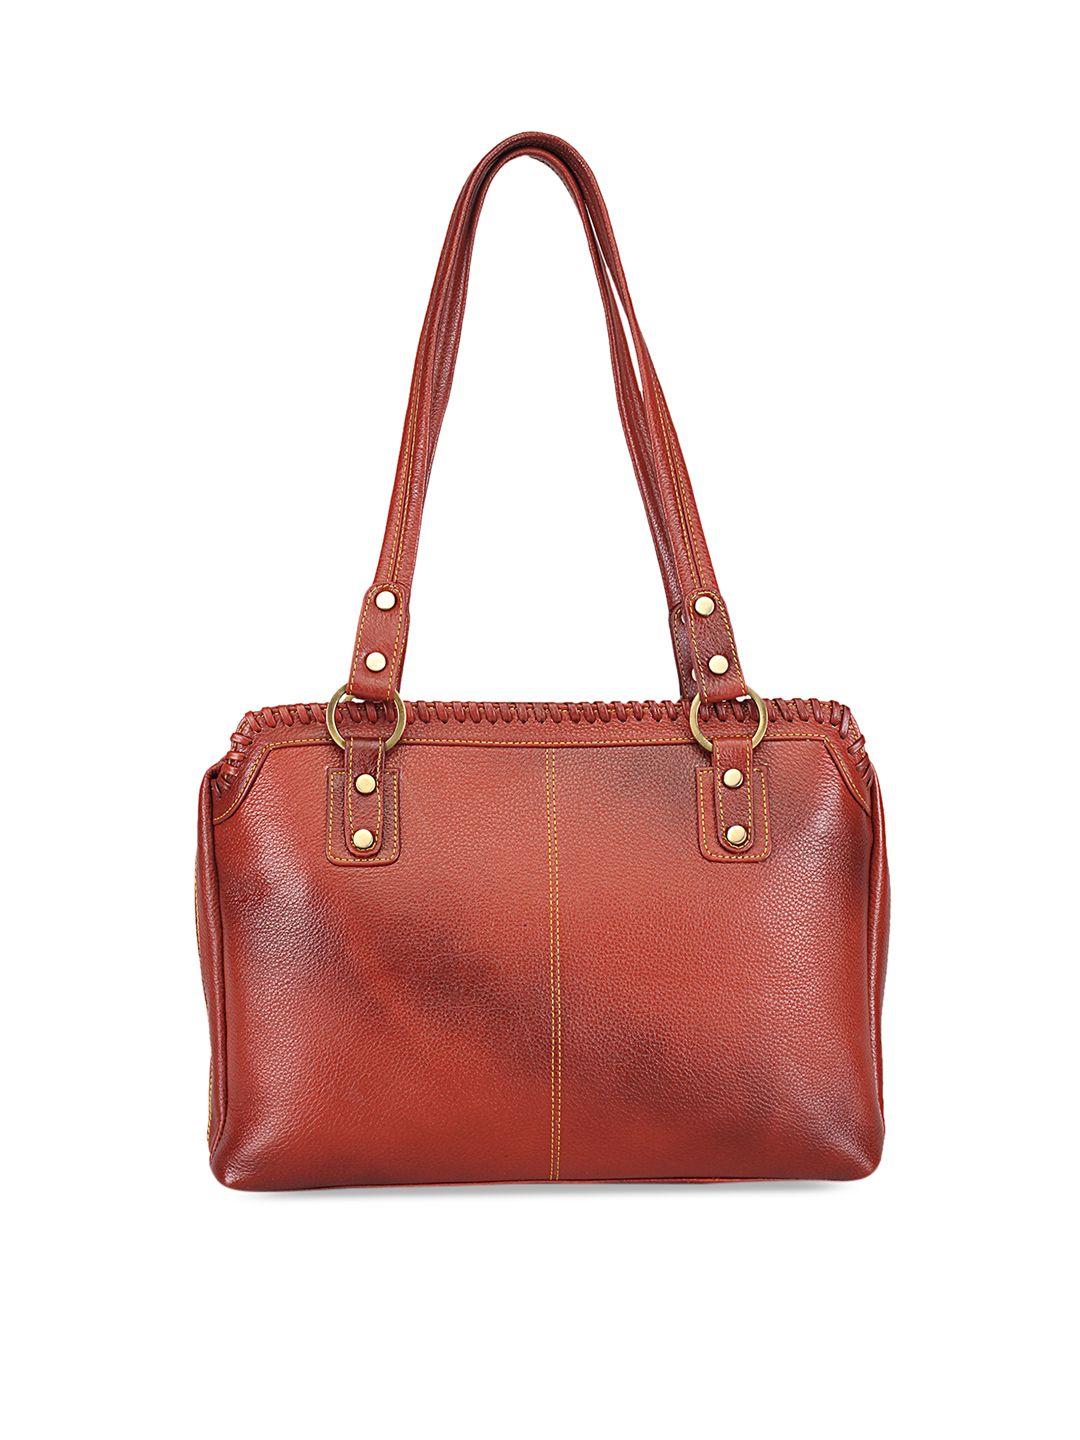 genwayne brown solid leather shoulder bag